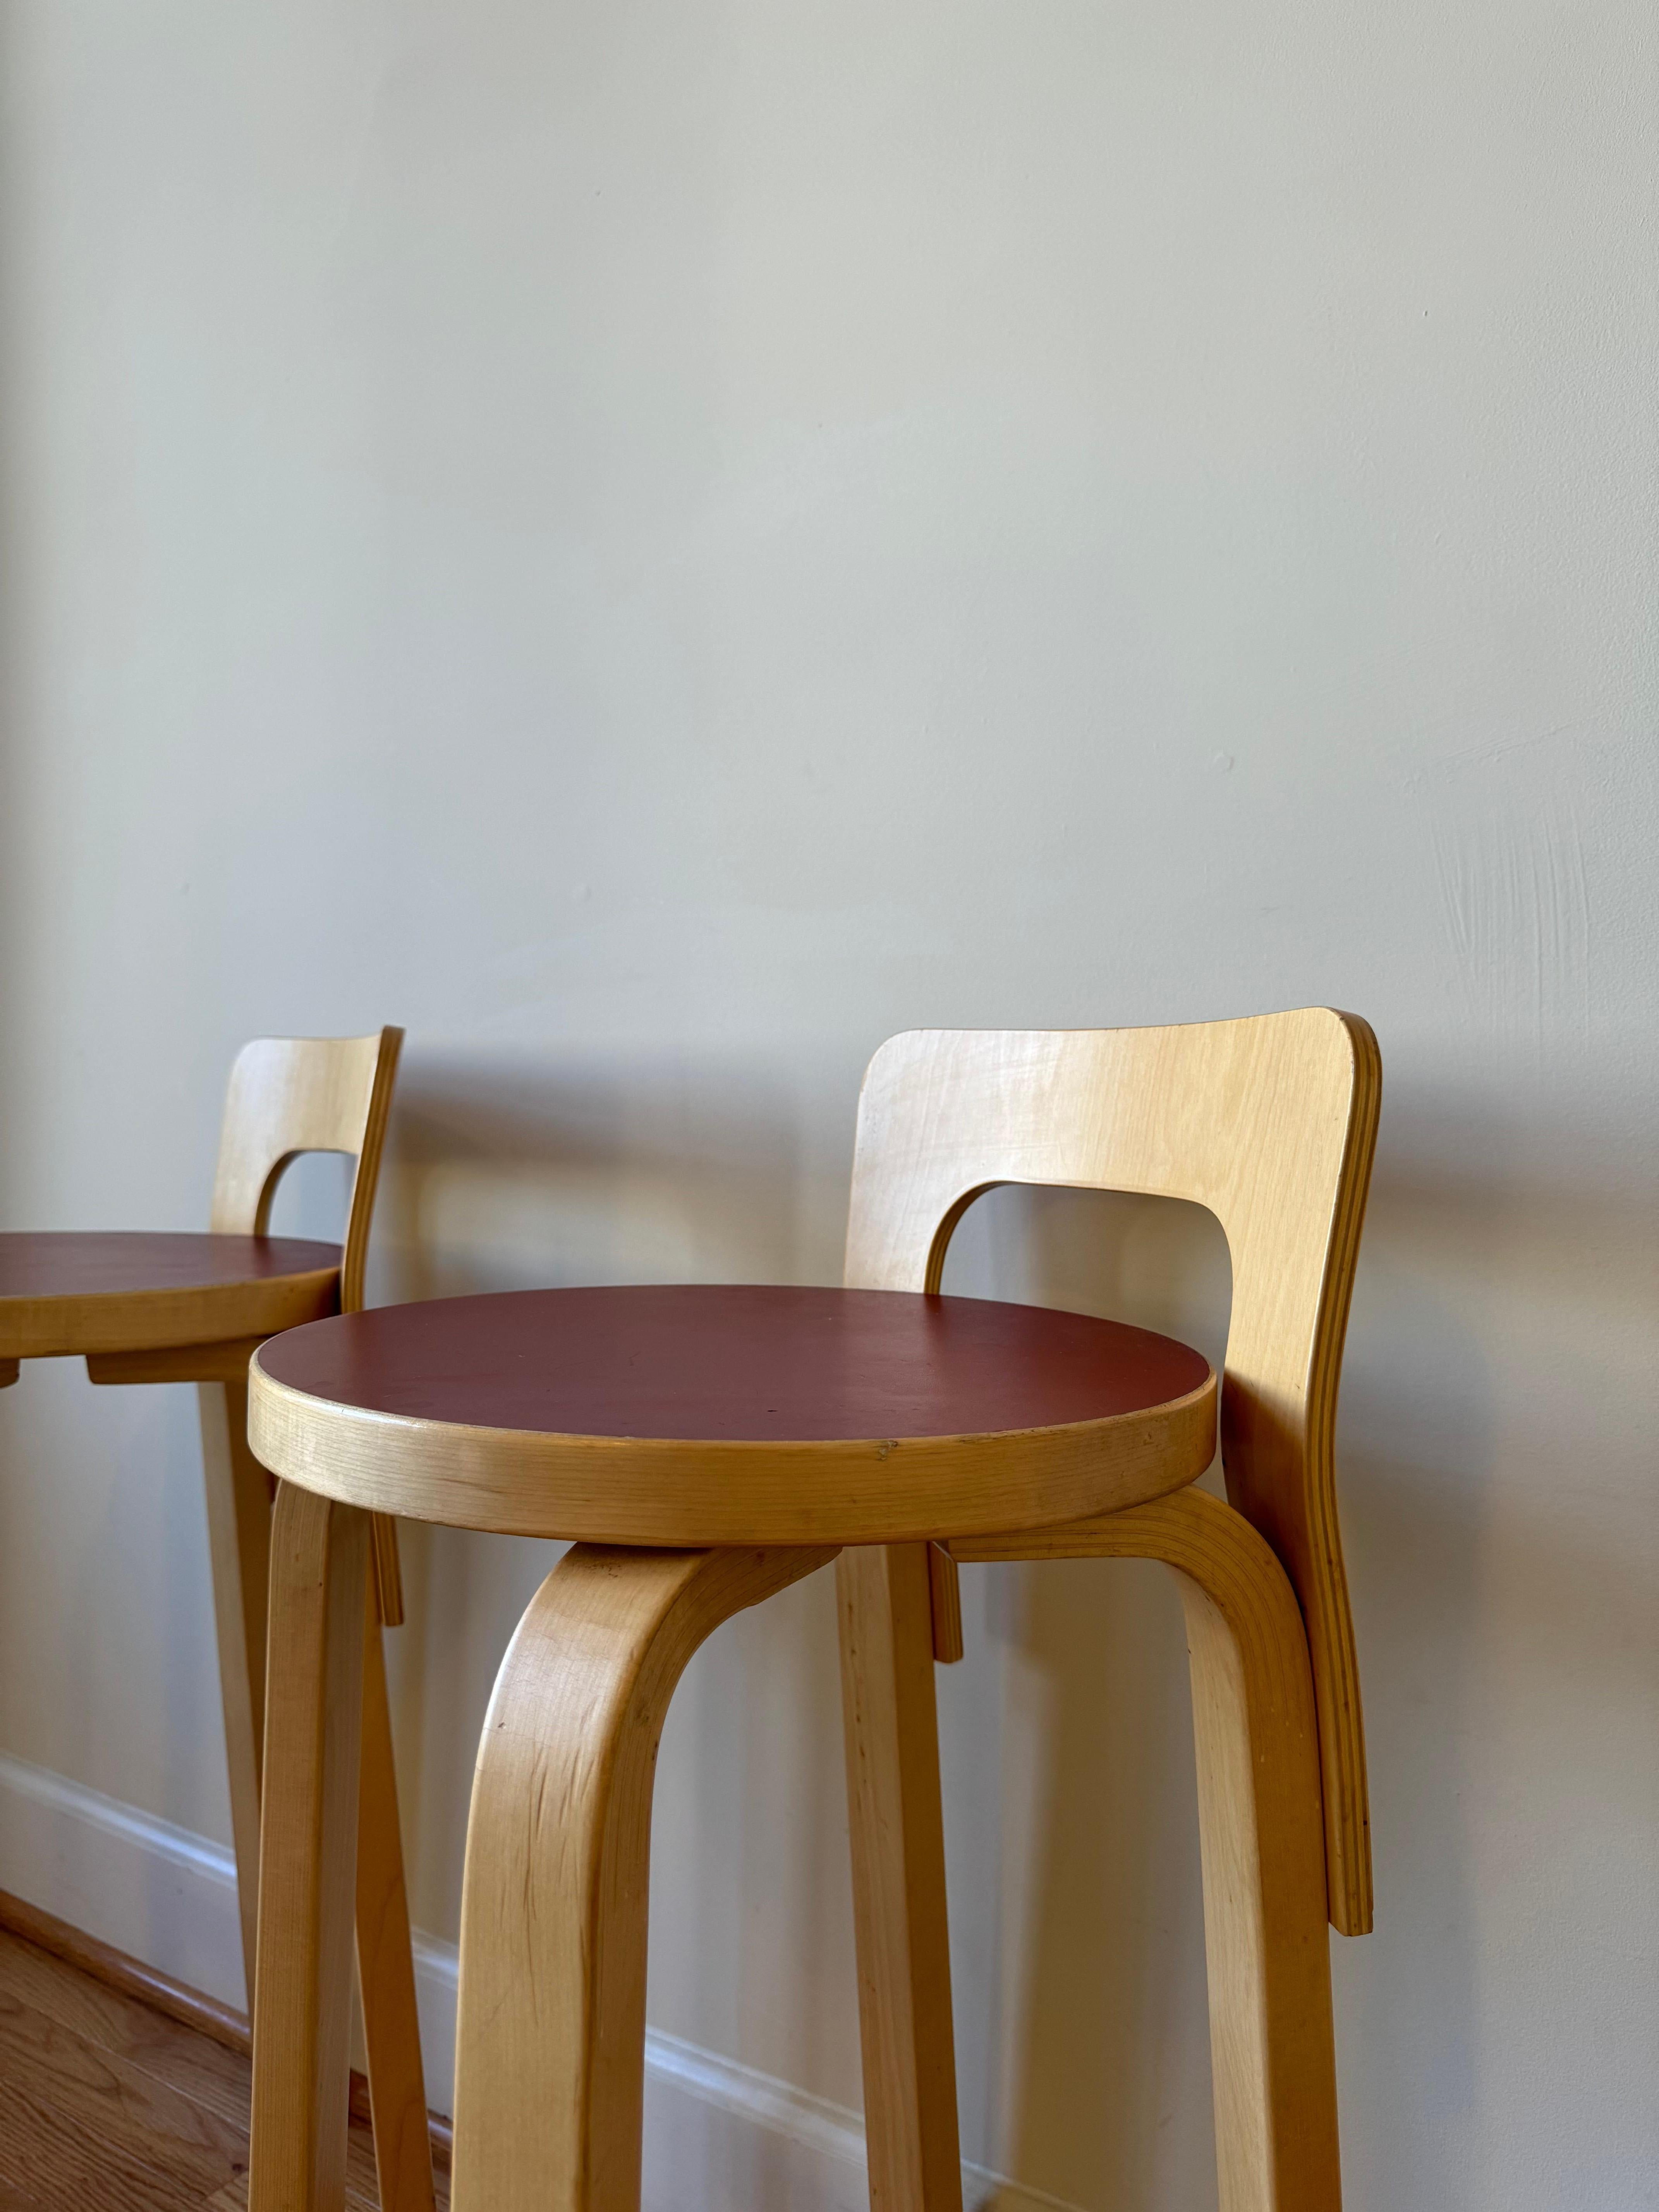 High Chair K65 von Alvar Aalto für Artek (Sitz aus rotem Linoleum) (Mitte des 20. Jahrhunderts)